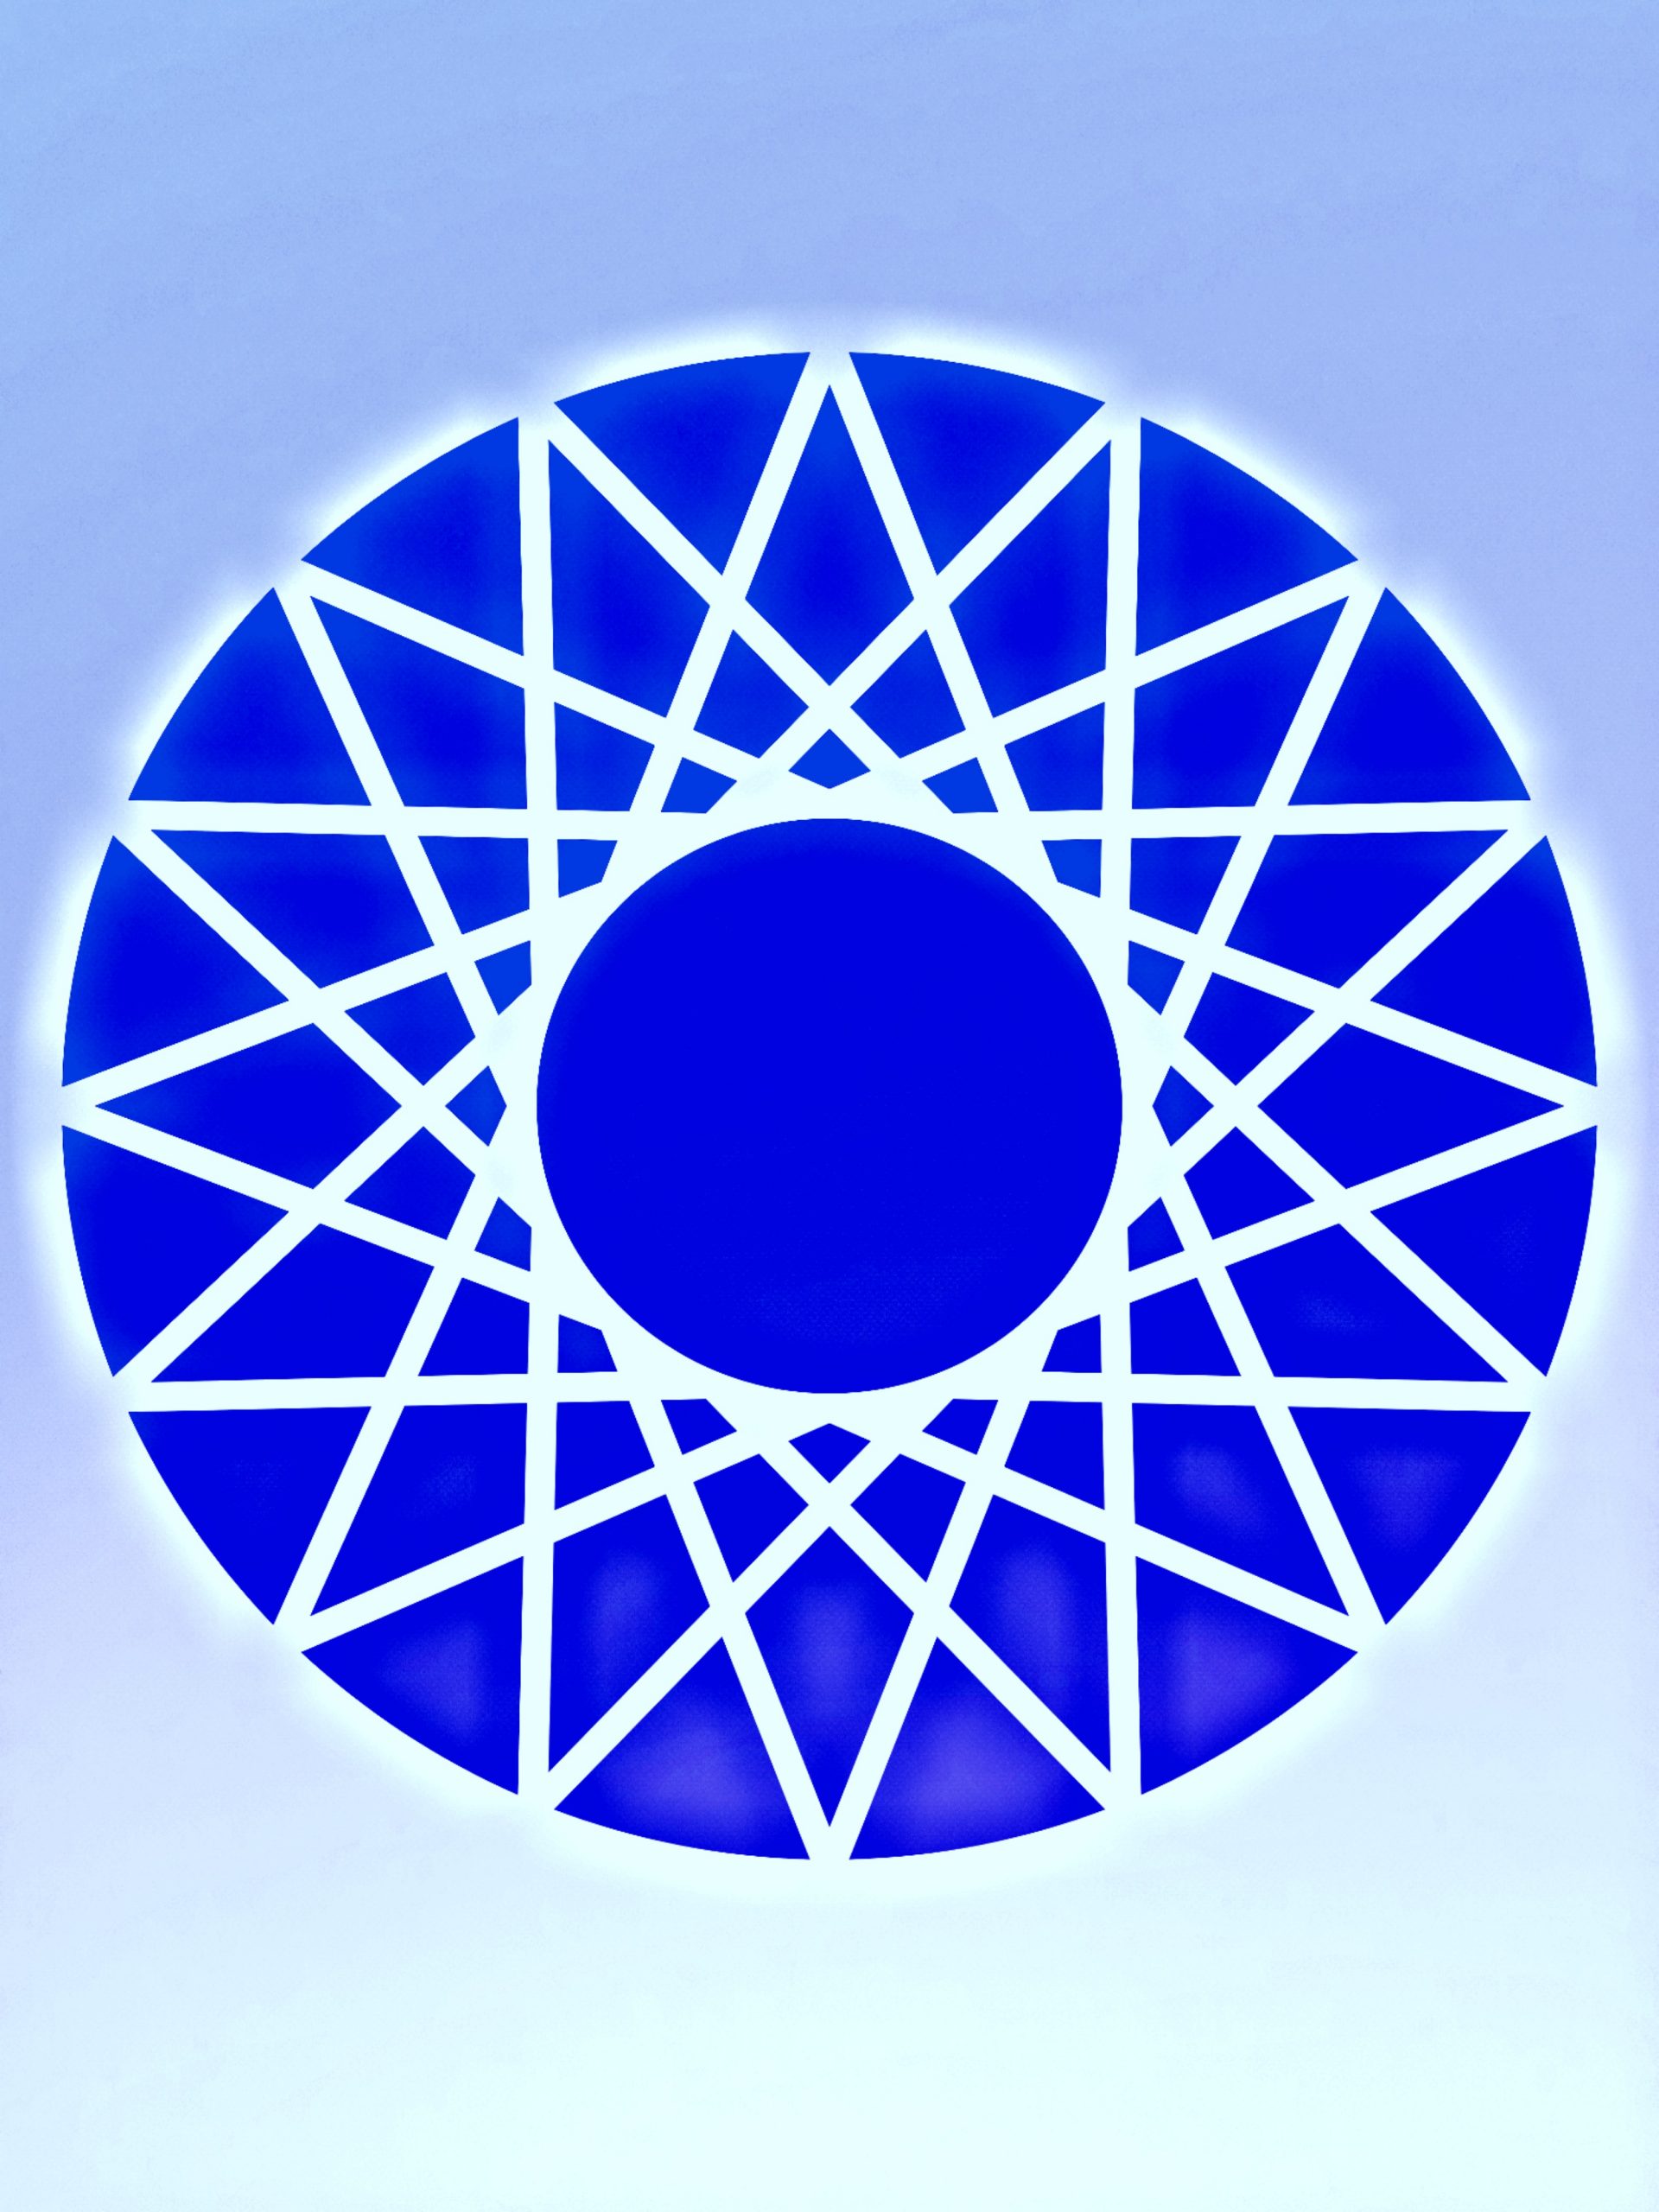 A circular design